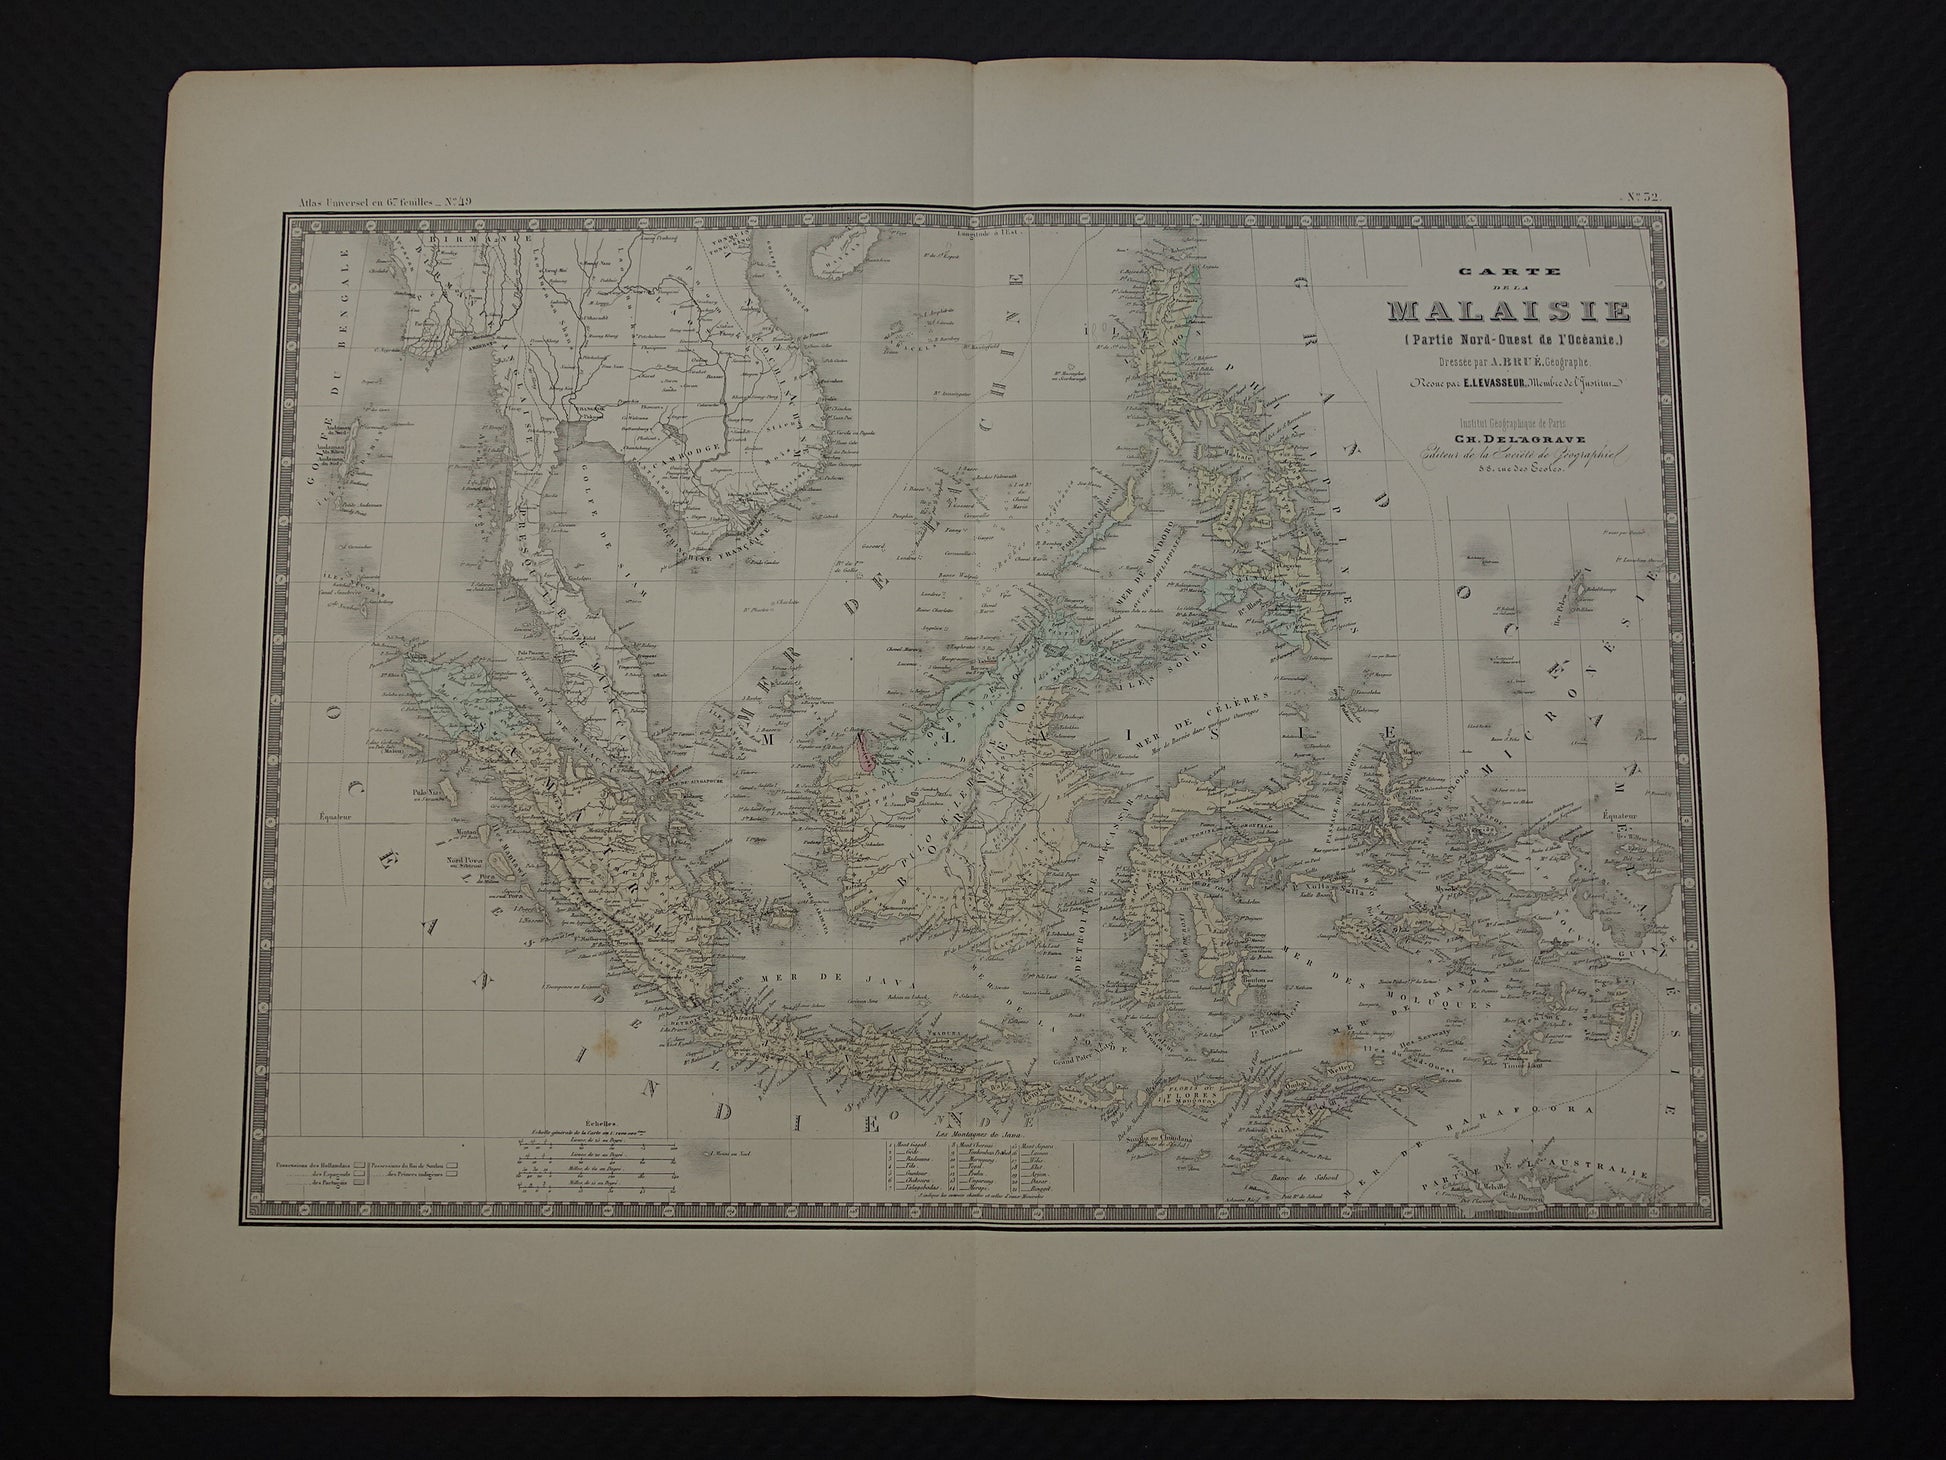 INDONESIË oude kaart van Indonesië Filipijnen Zuidoost-Azië 1876 originele antieke Franse handgekleurde landkaart